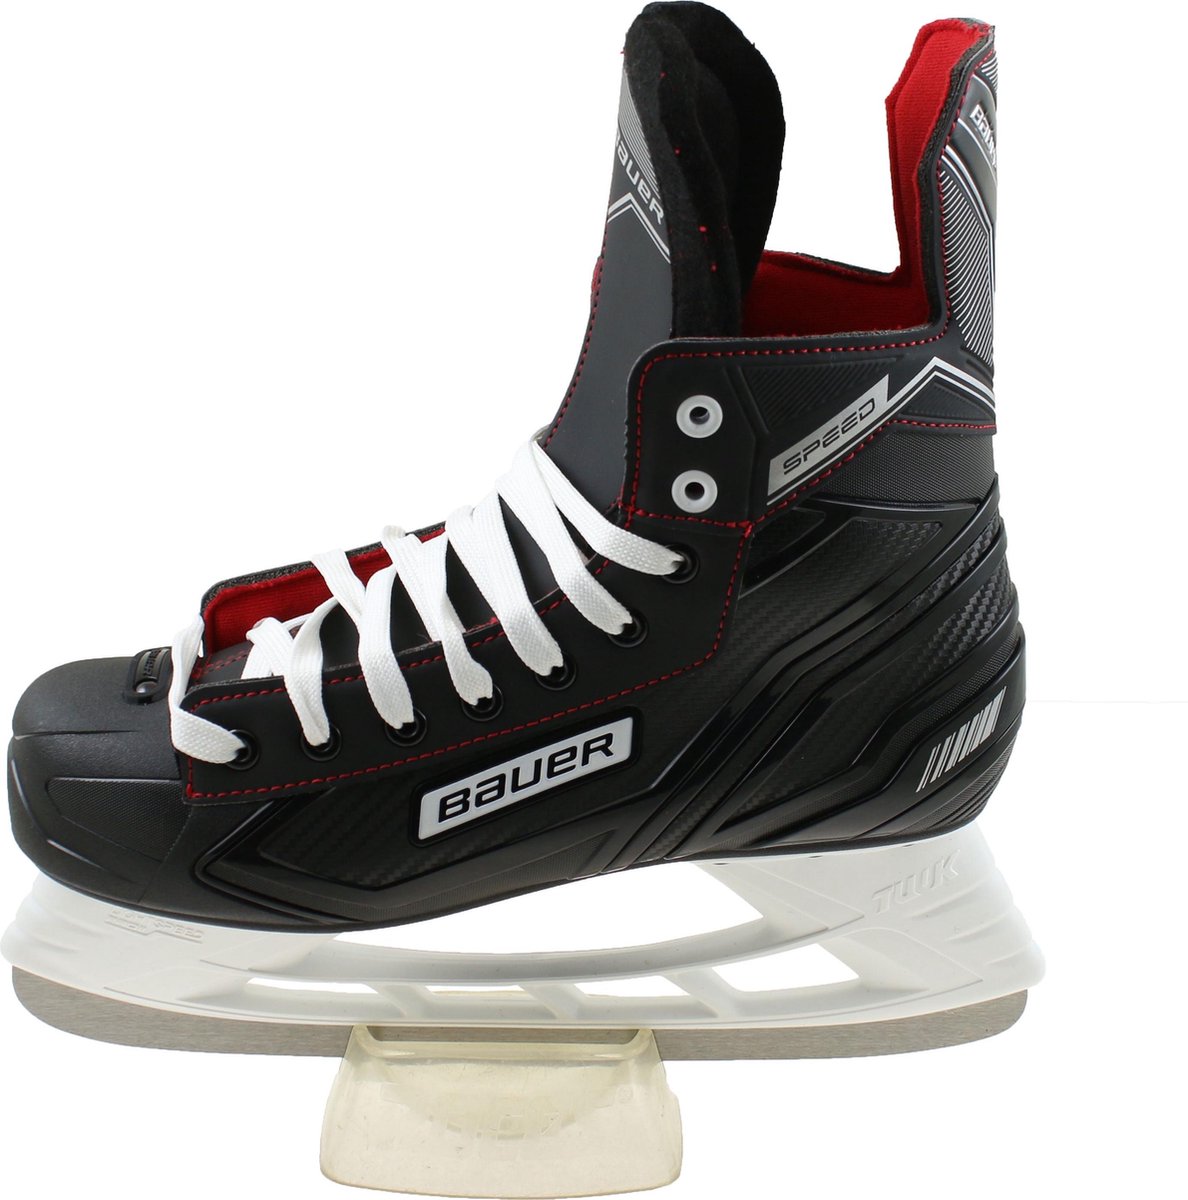 Bauer speed ijshockey schaatsen in de kleur zwart. Maat 47. Besteladvies om  1 maat... | bol.com